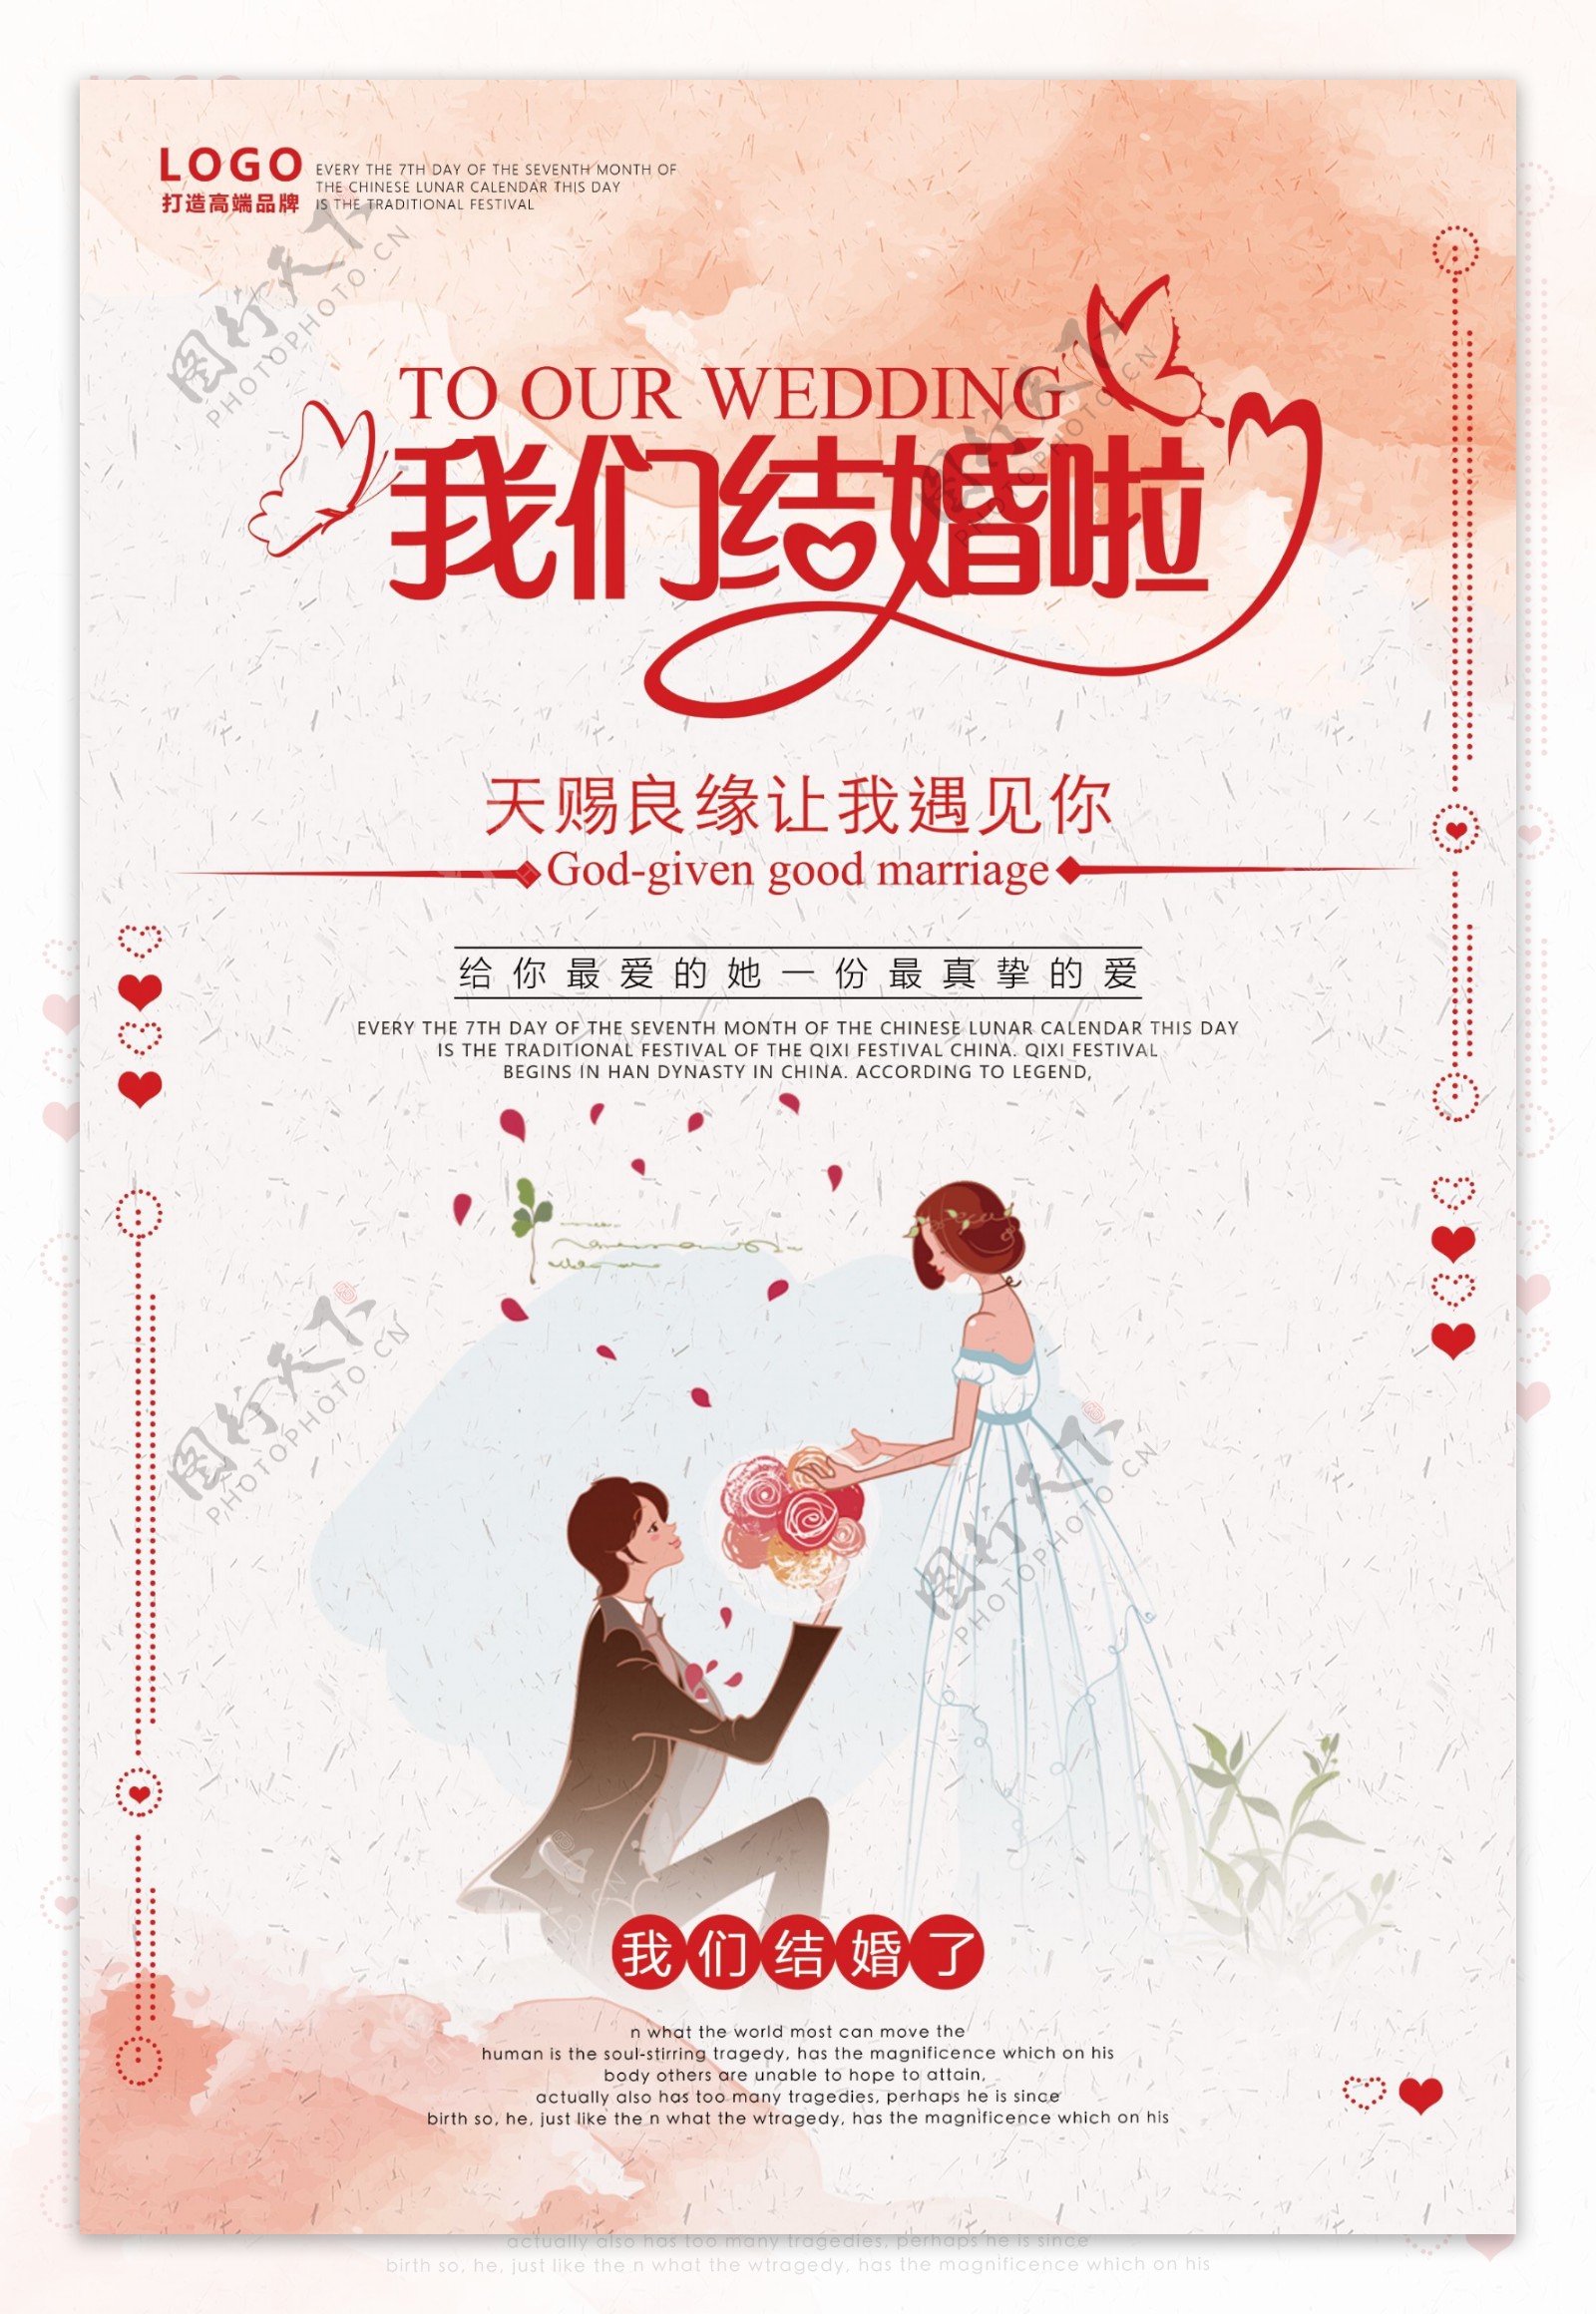 浪漫爱情主题婚礼宣传海报设计